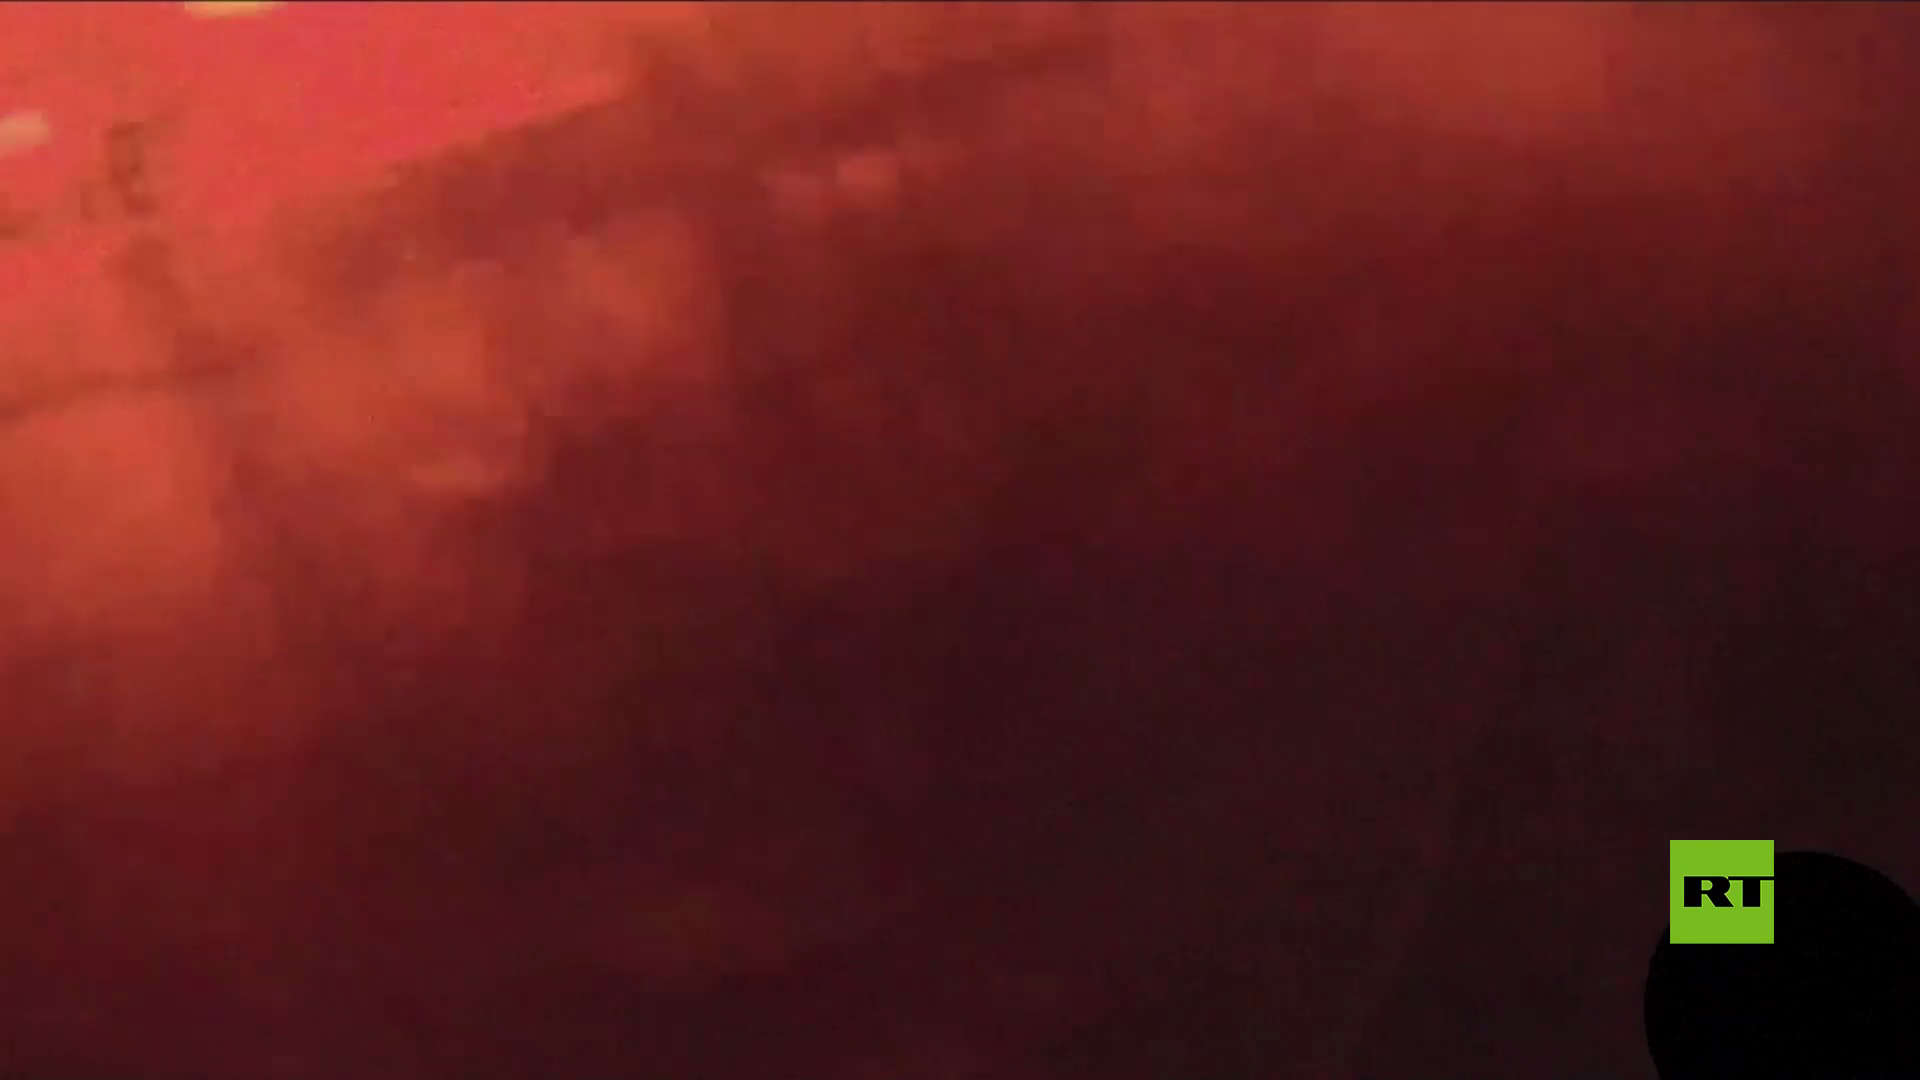 الكاميرا تسجل لحظة انفجار في محطة كهربائية أثناء عاصفة في ناشفيل الأمريكية